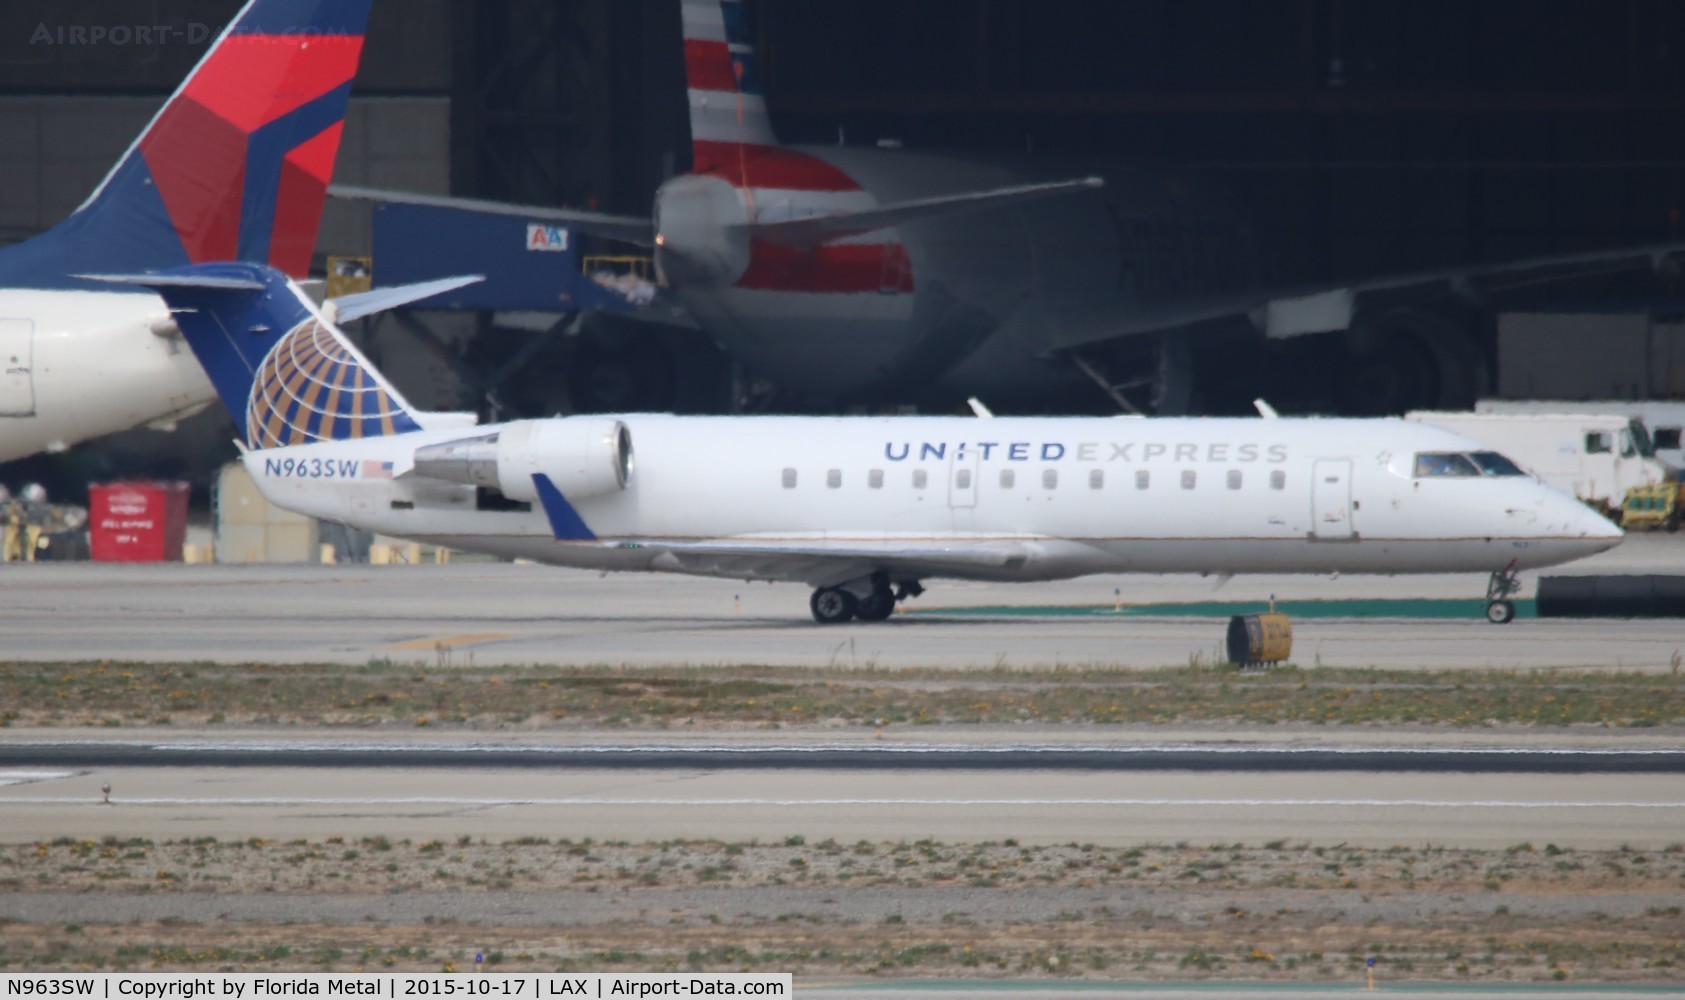 N963SW, 2003 Bombardier CRJ-200LR (CL-600-2B19) C/N 7865, United Express